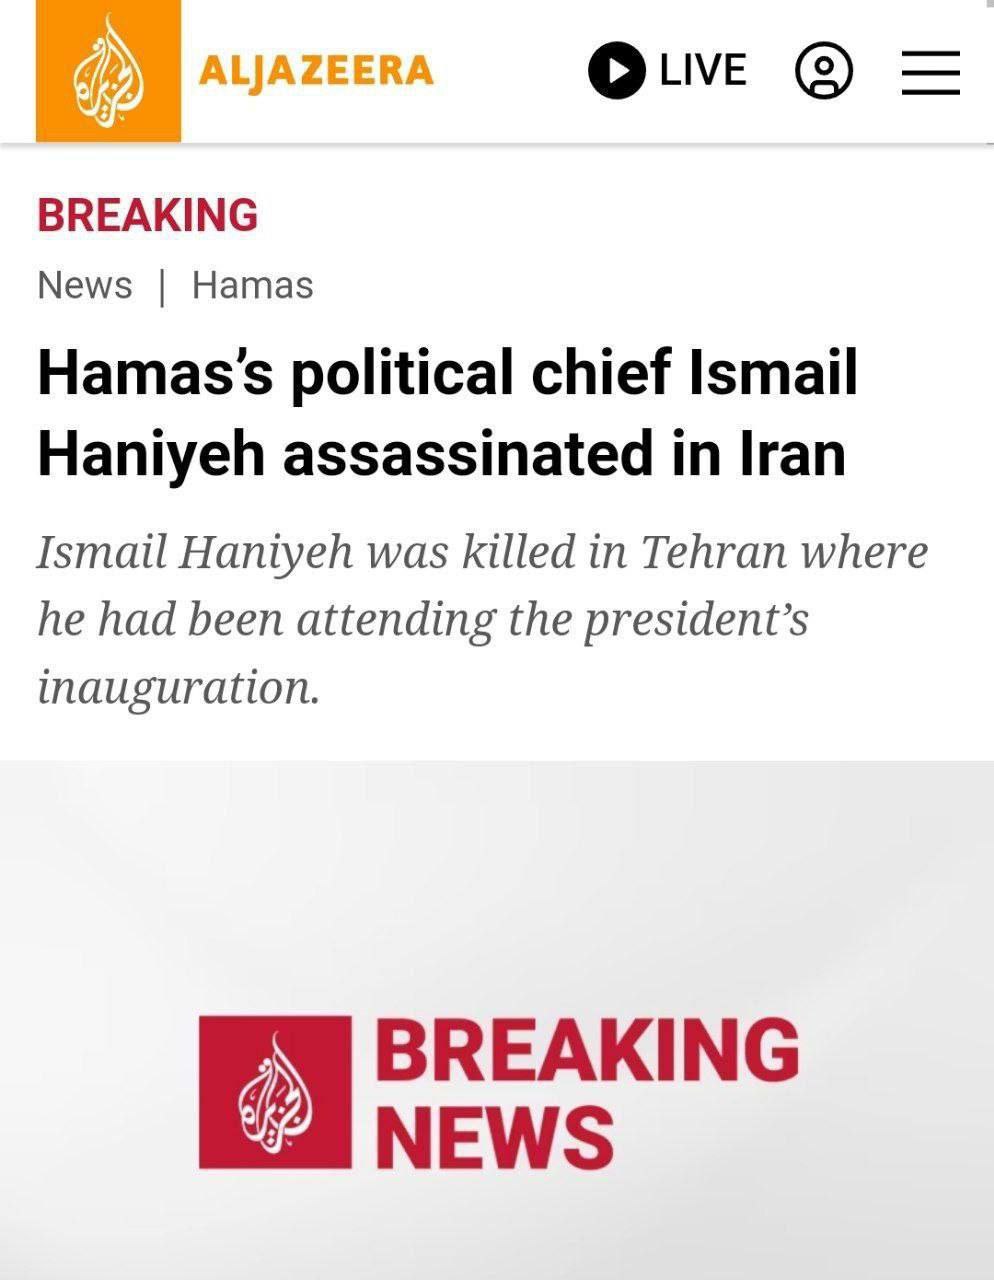 خبر ترور اسماعیل هنیه در صدر اخبار جهان قرار گرفت